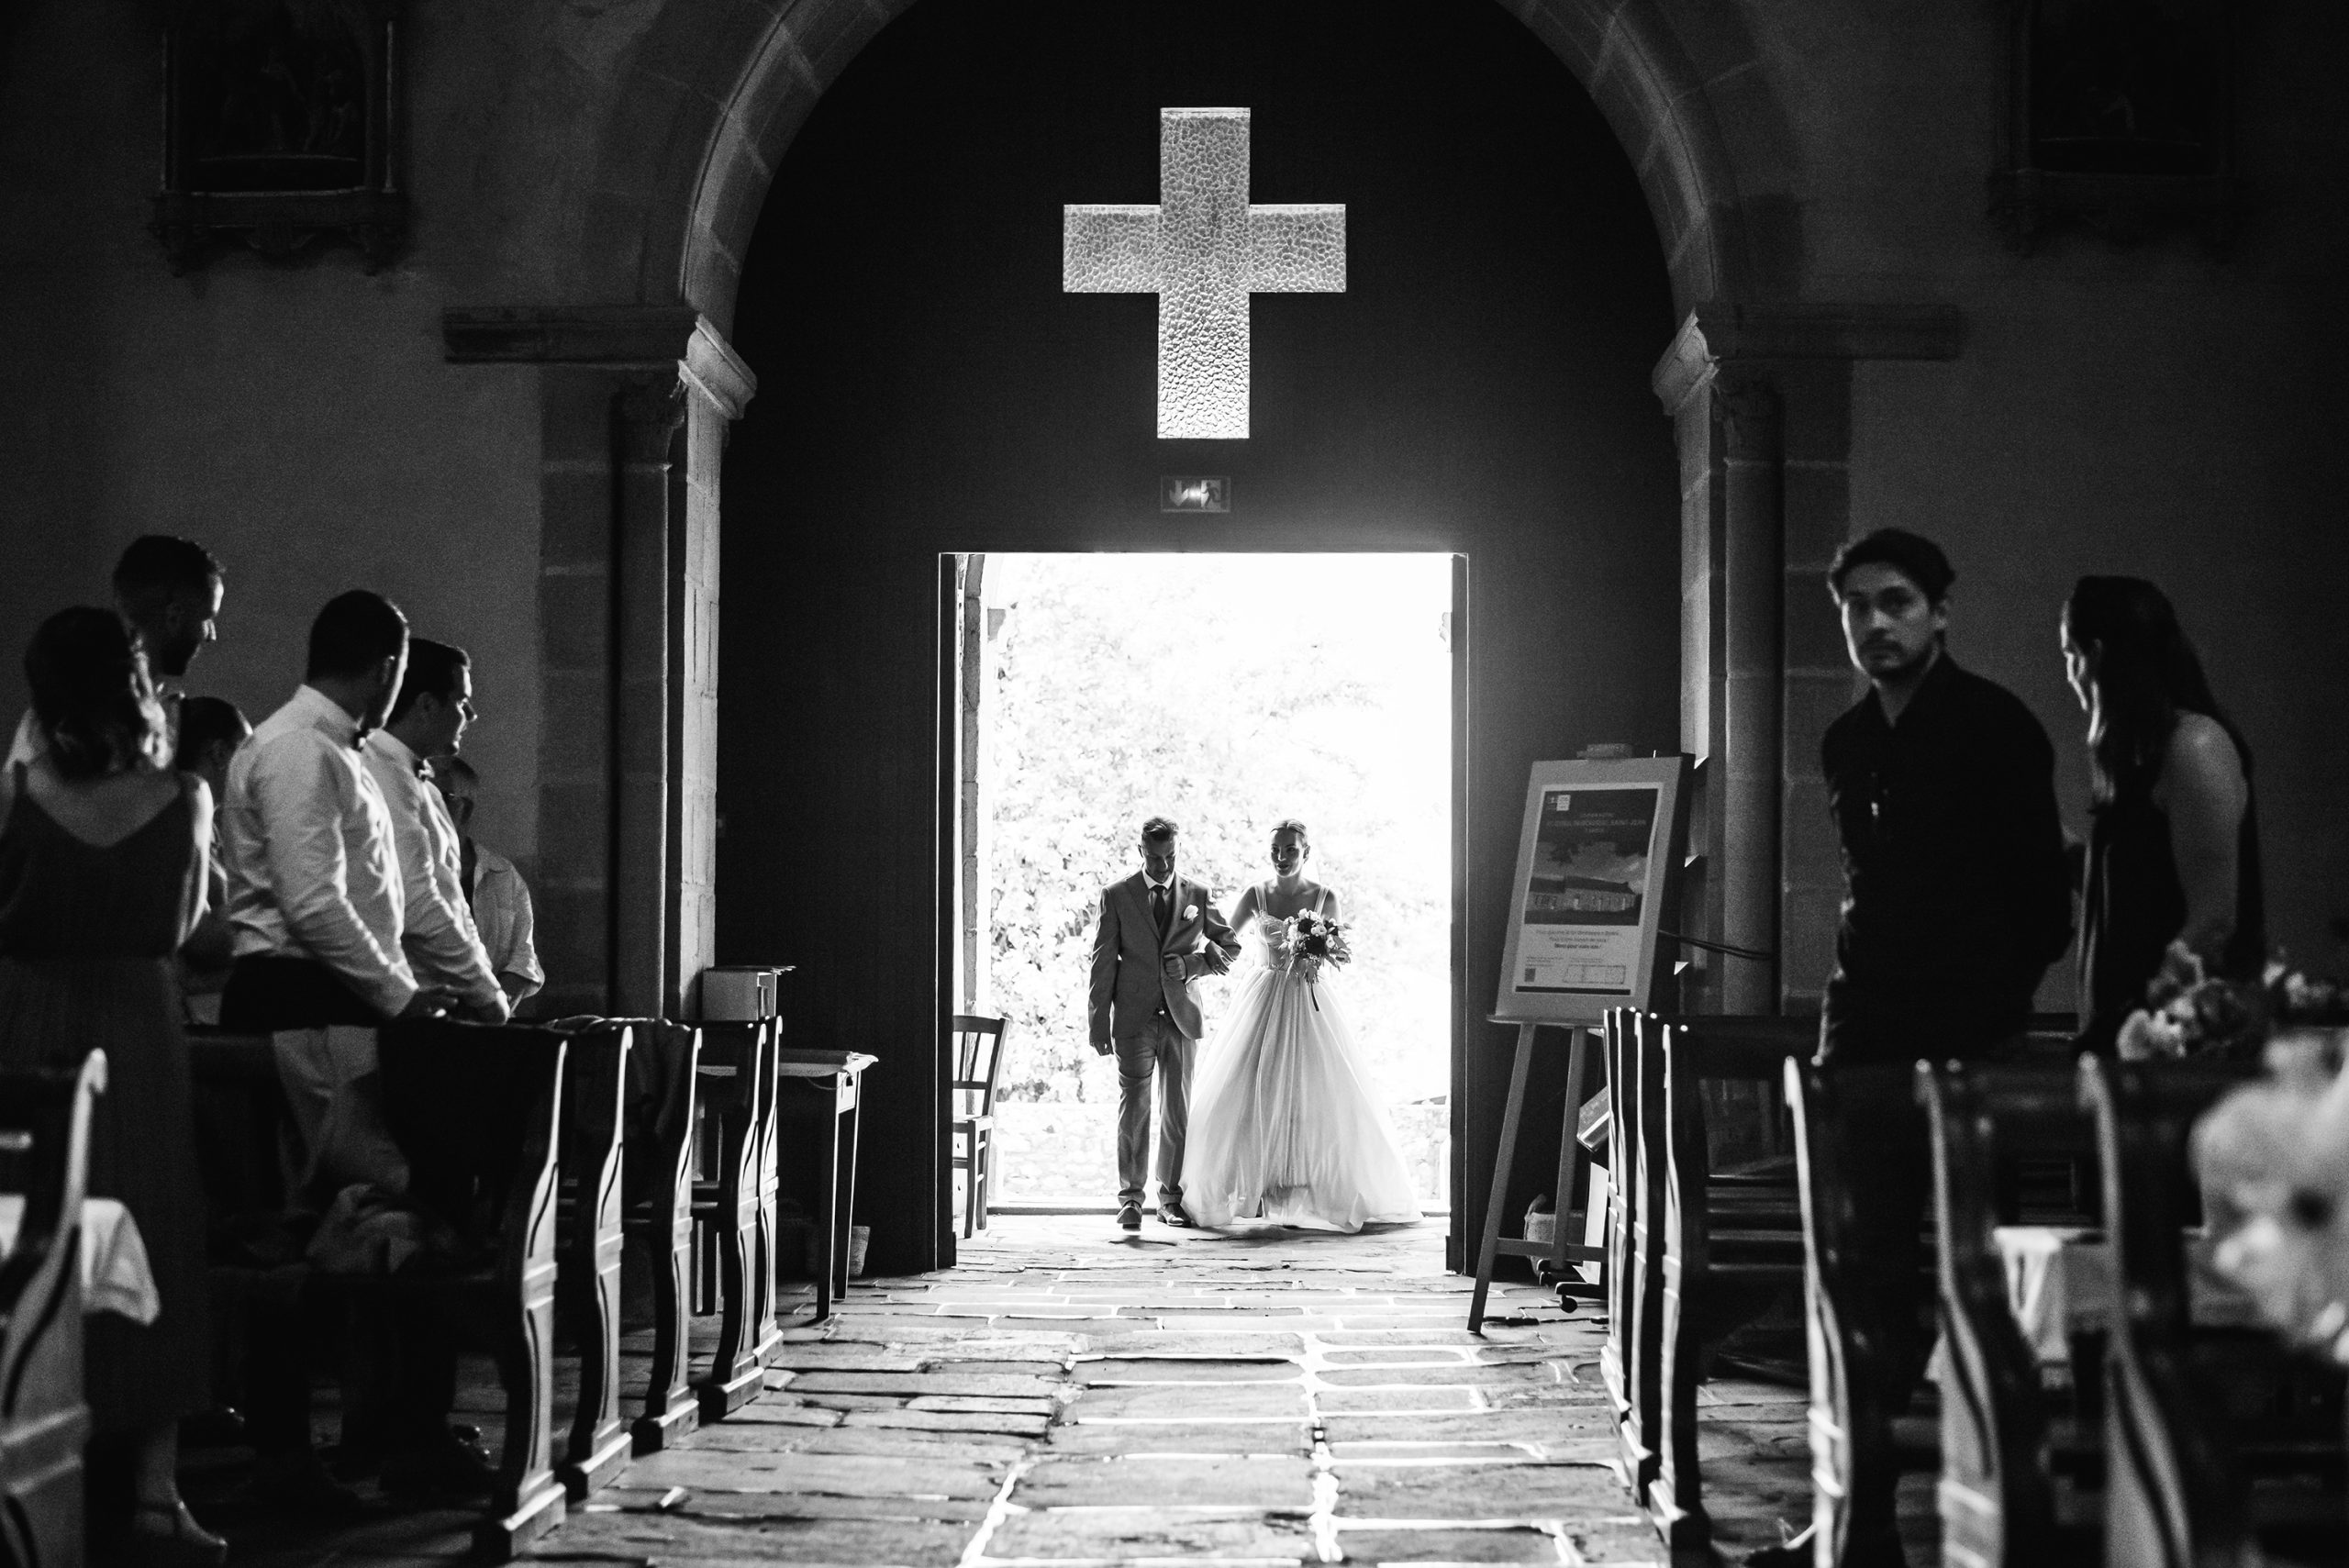 Les prêtres autorisent-ils tous les photographies lors des mariages ?